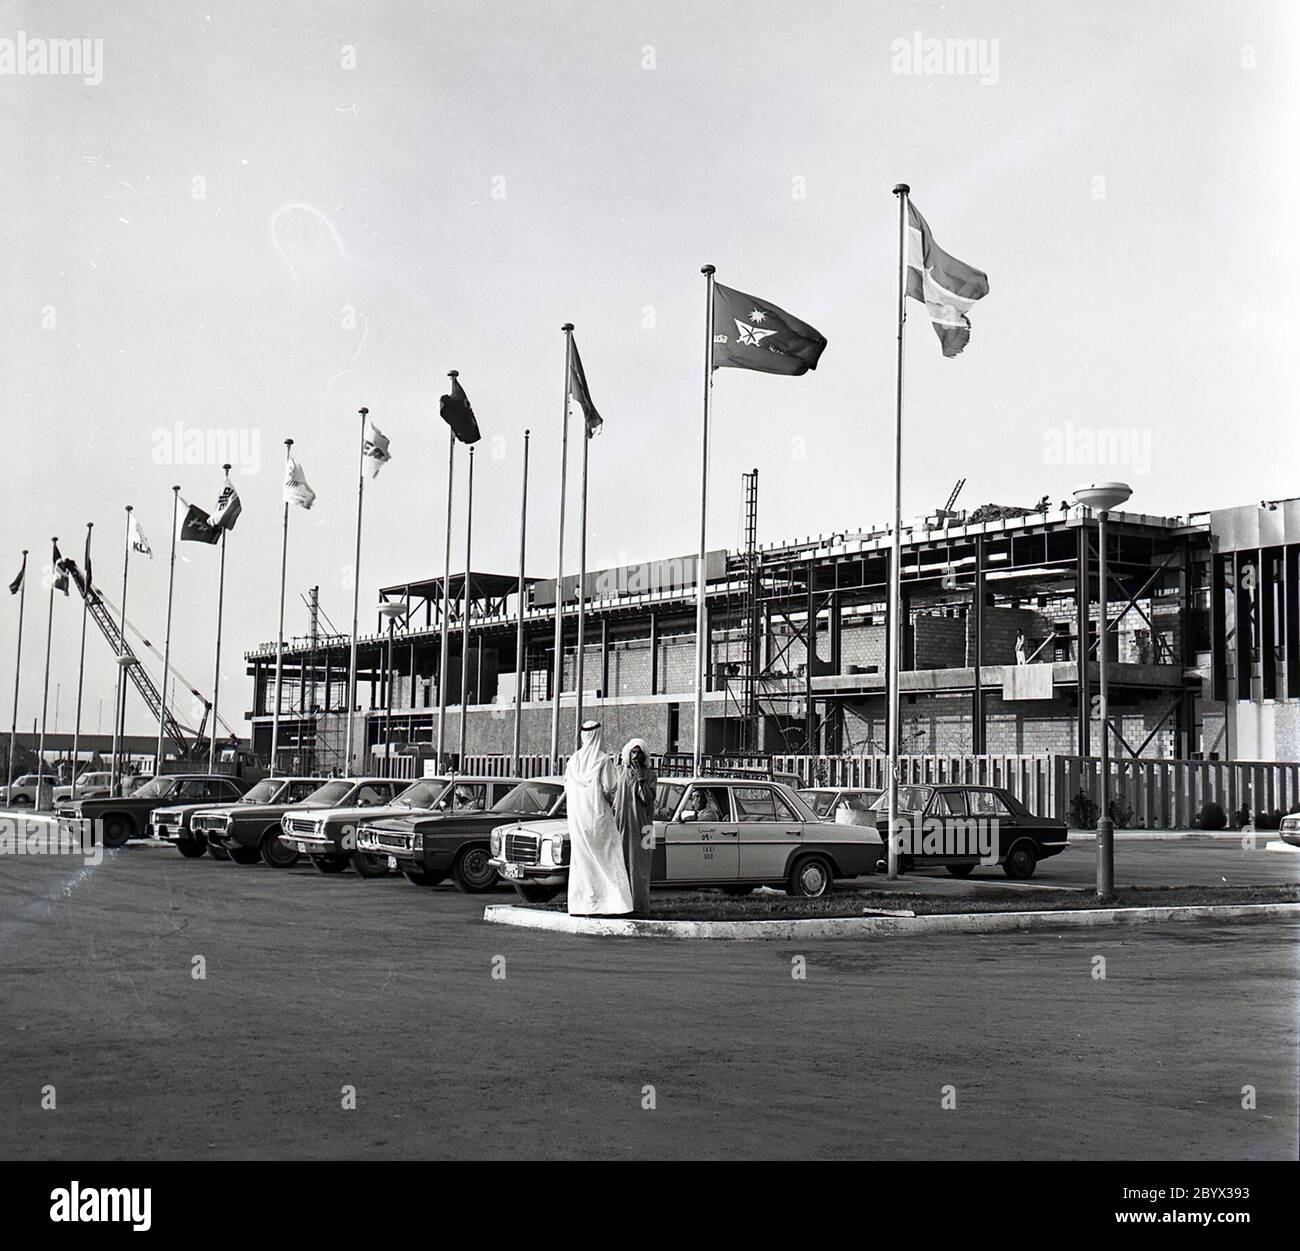 Una fotografia dell'esterno dell'Aeroporto Internazionale del Bahrain nel Dicembre 1975. I taxi parcheggiati possono essere visti in primo piano tra i pali della bandiera Foto Stock